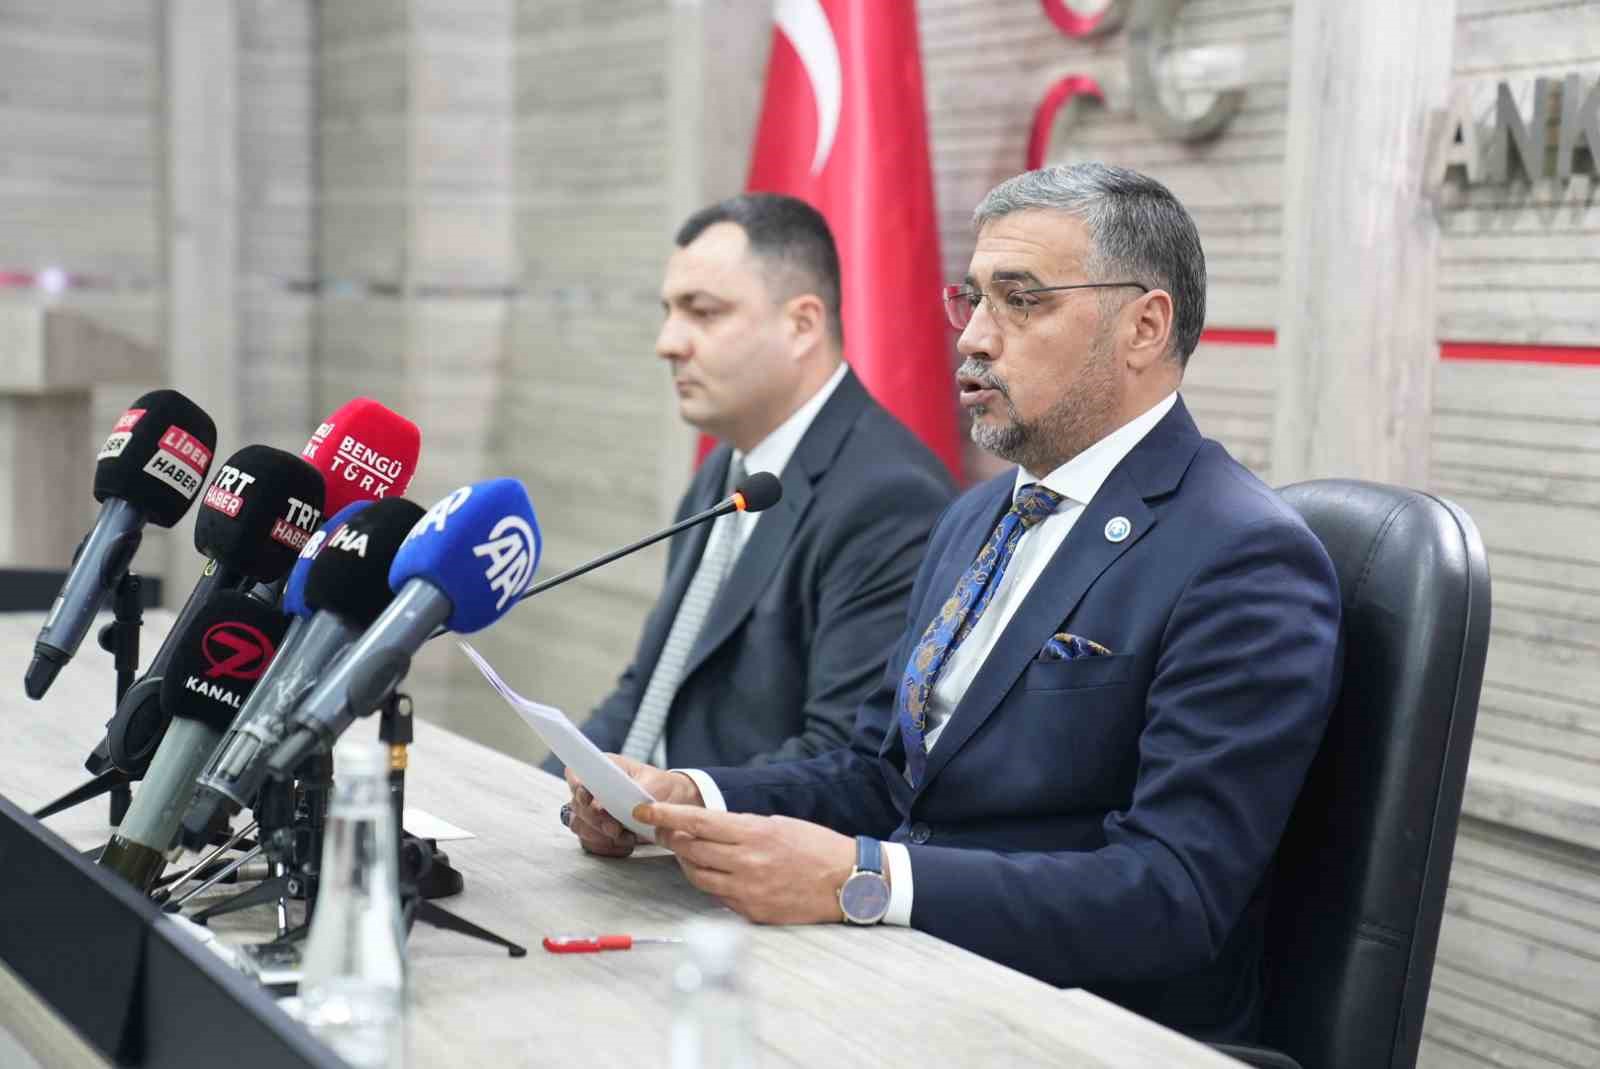 MHP İl Başkanı Doğan, Ankara için “Altıok” yerine “Altınok” ifadesinin daha uygun olduğunu söyledi.